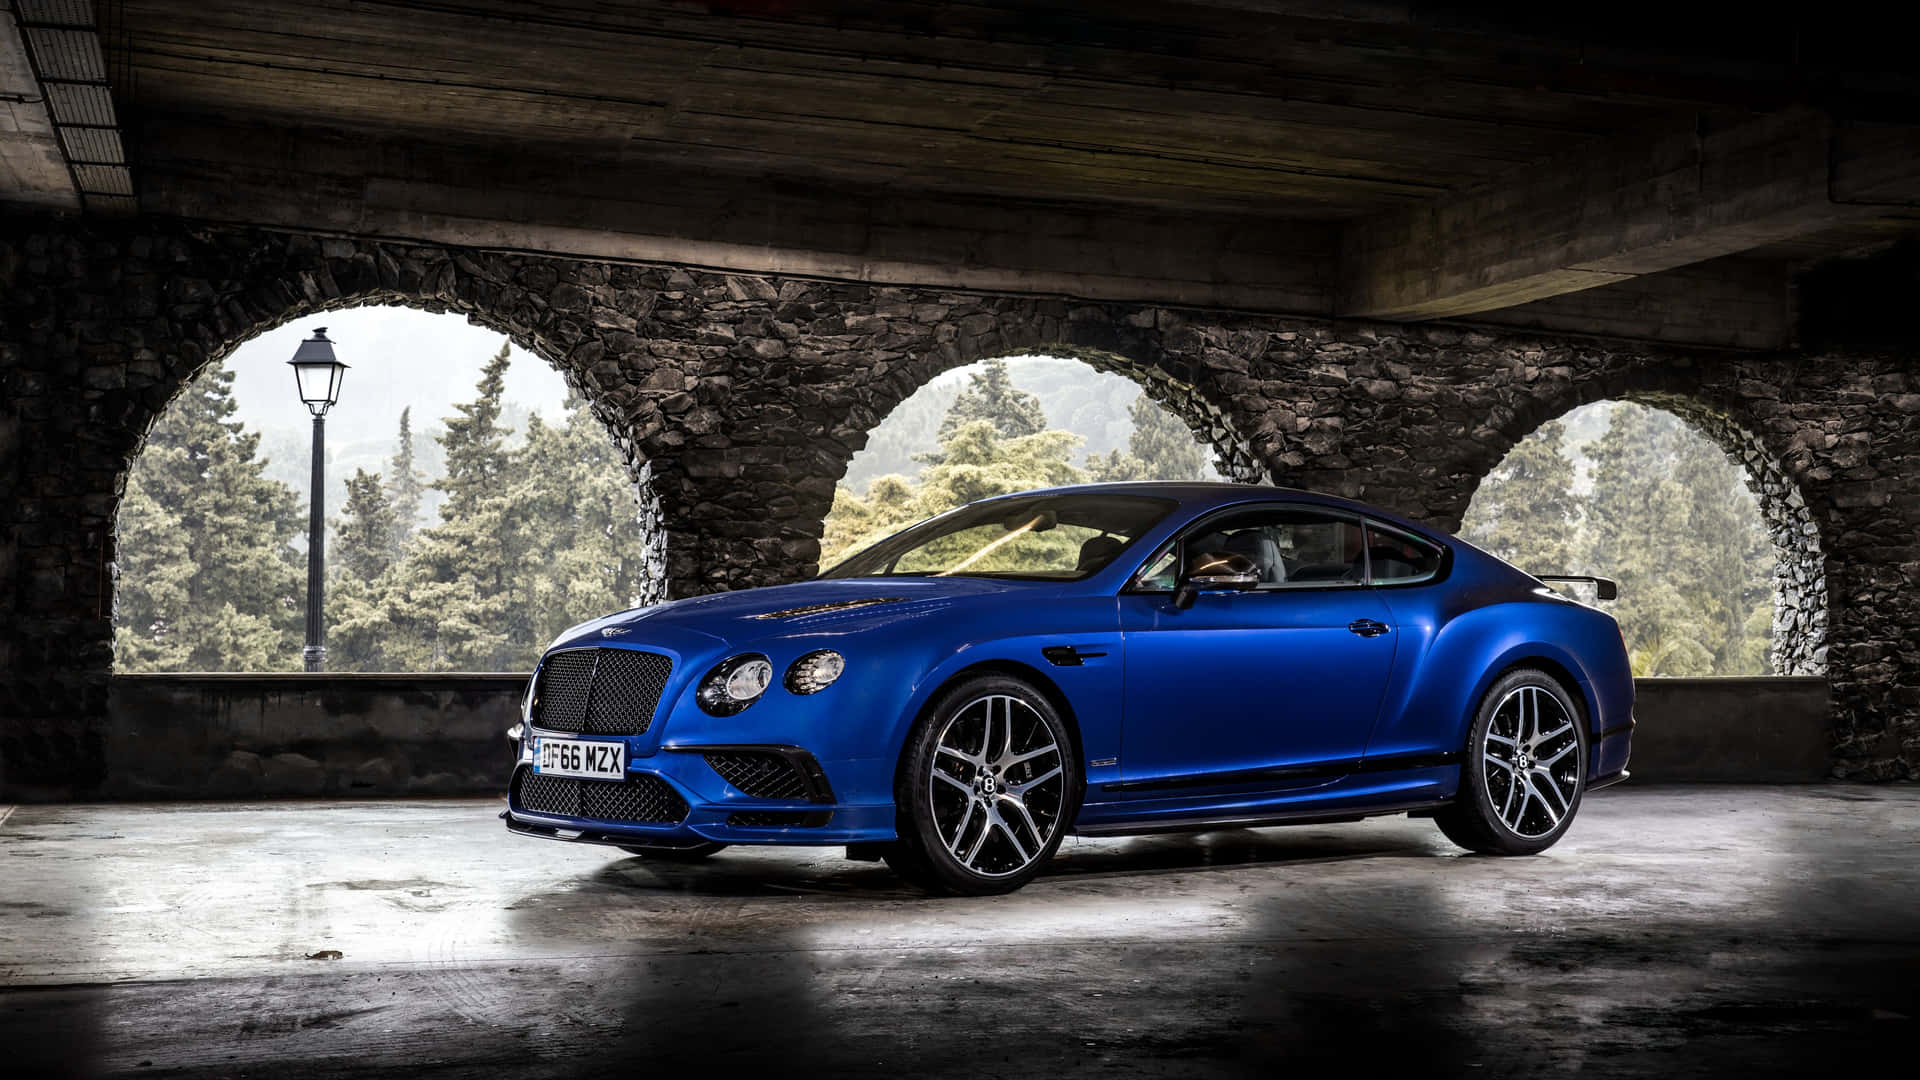 Experience the luxury of Bentley Sport Wallpaper